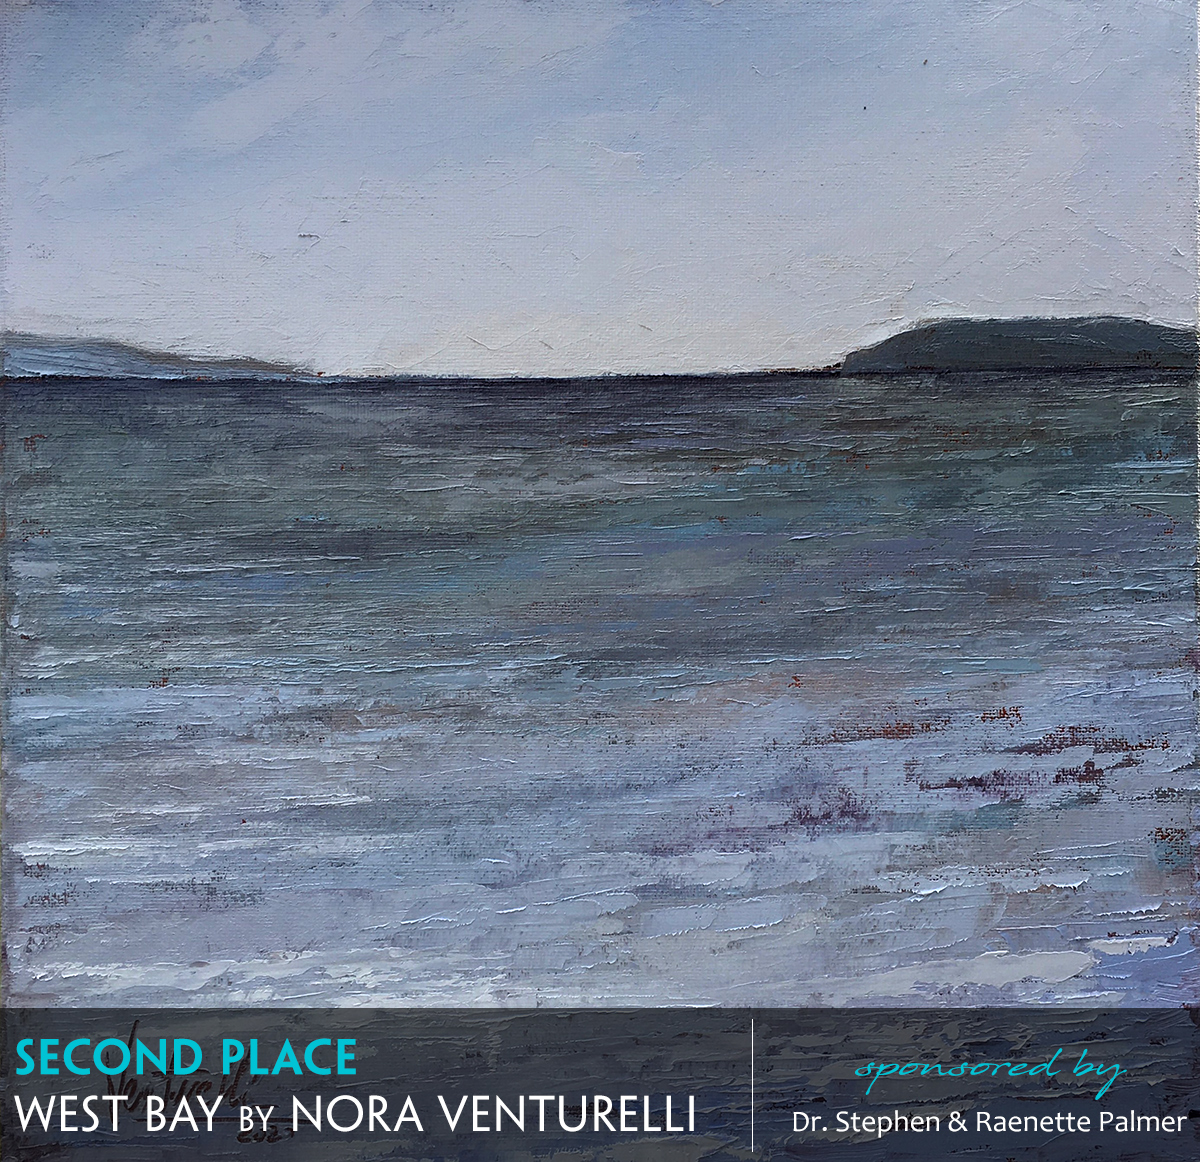 West Bay by Nora Venturelli